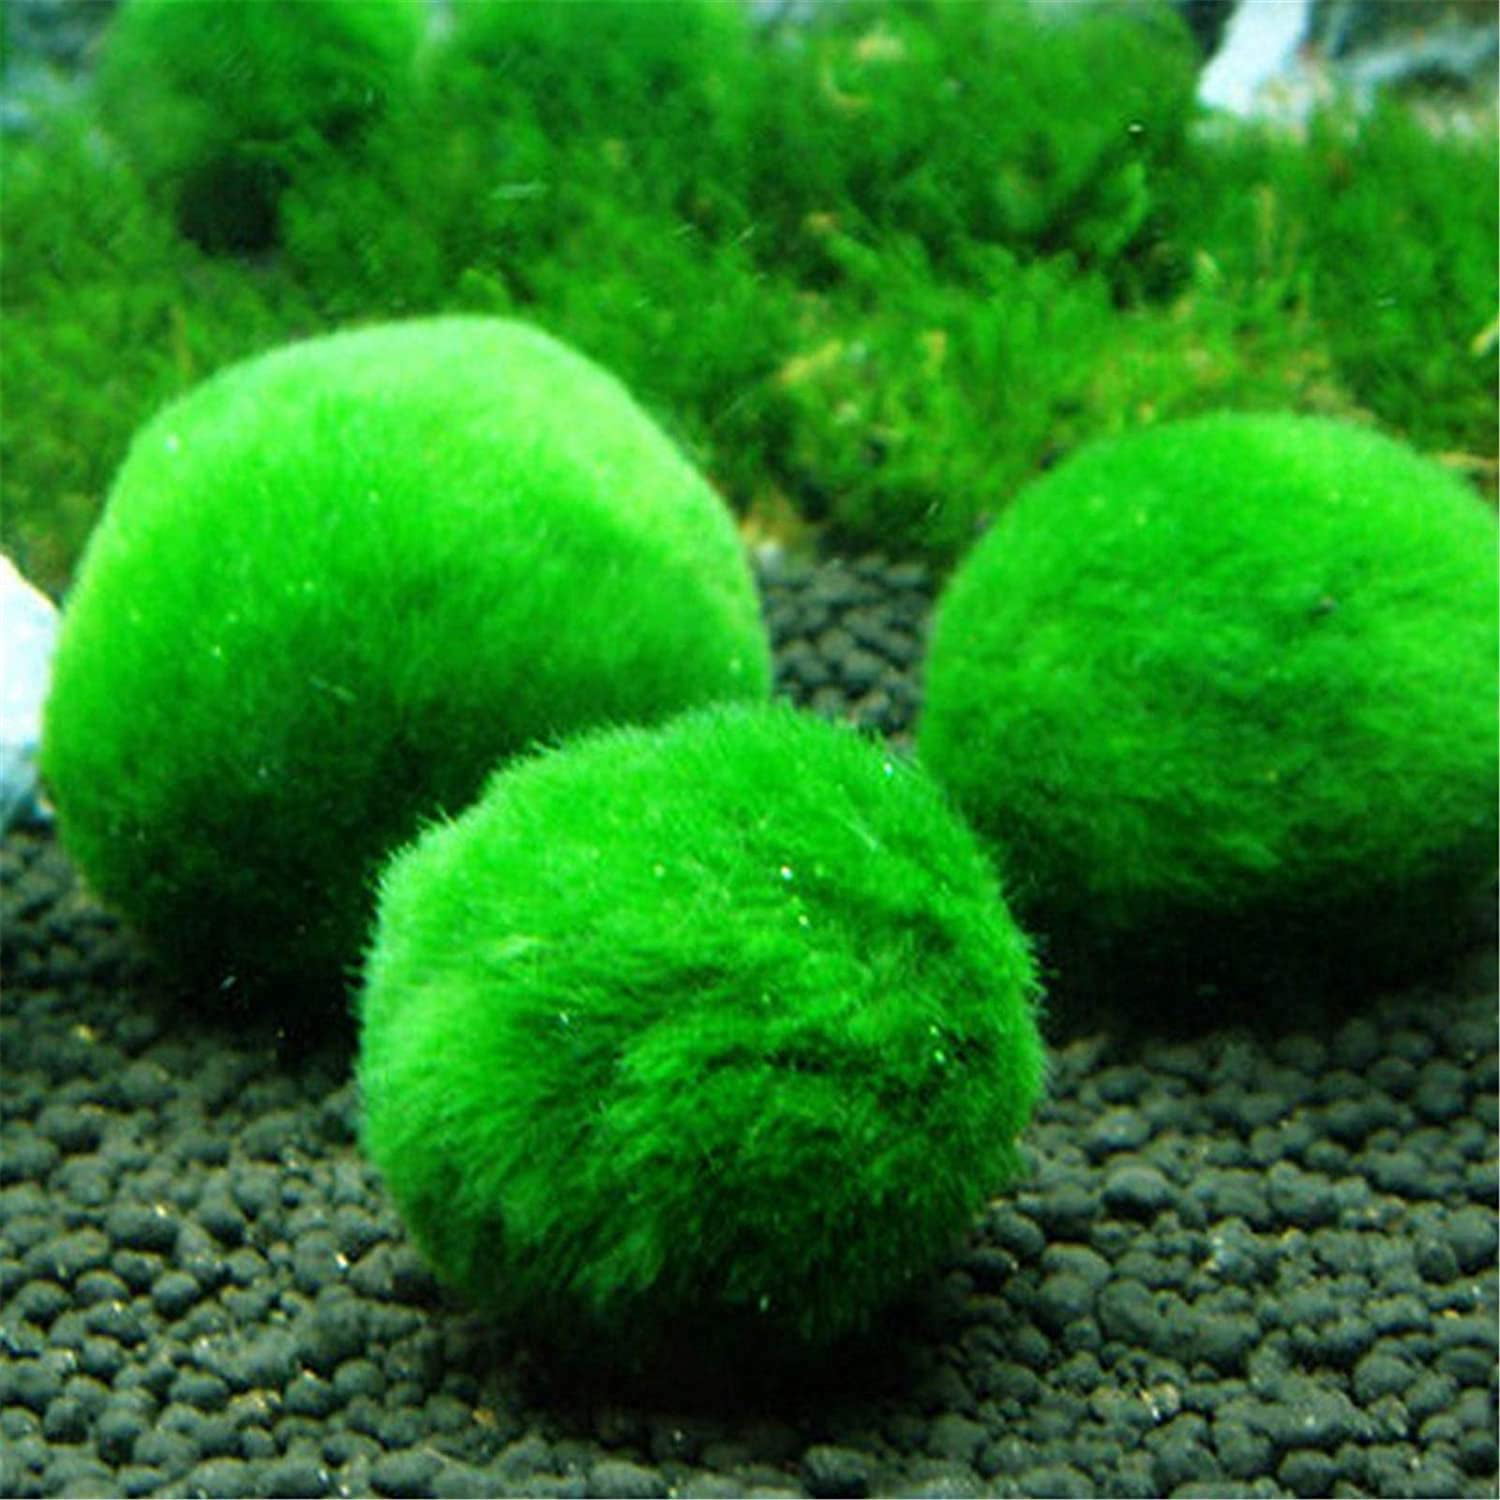 4pcs Aquarium Moss Balls, Artificial Aquarium Plants Green Moss Decorative Ball for Fish Tank Ornaments Freshwater Terrarium Moss Decoration